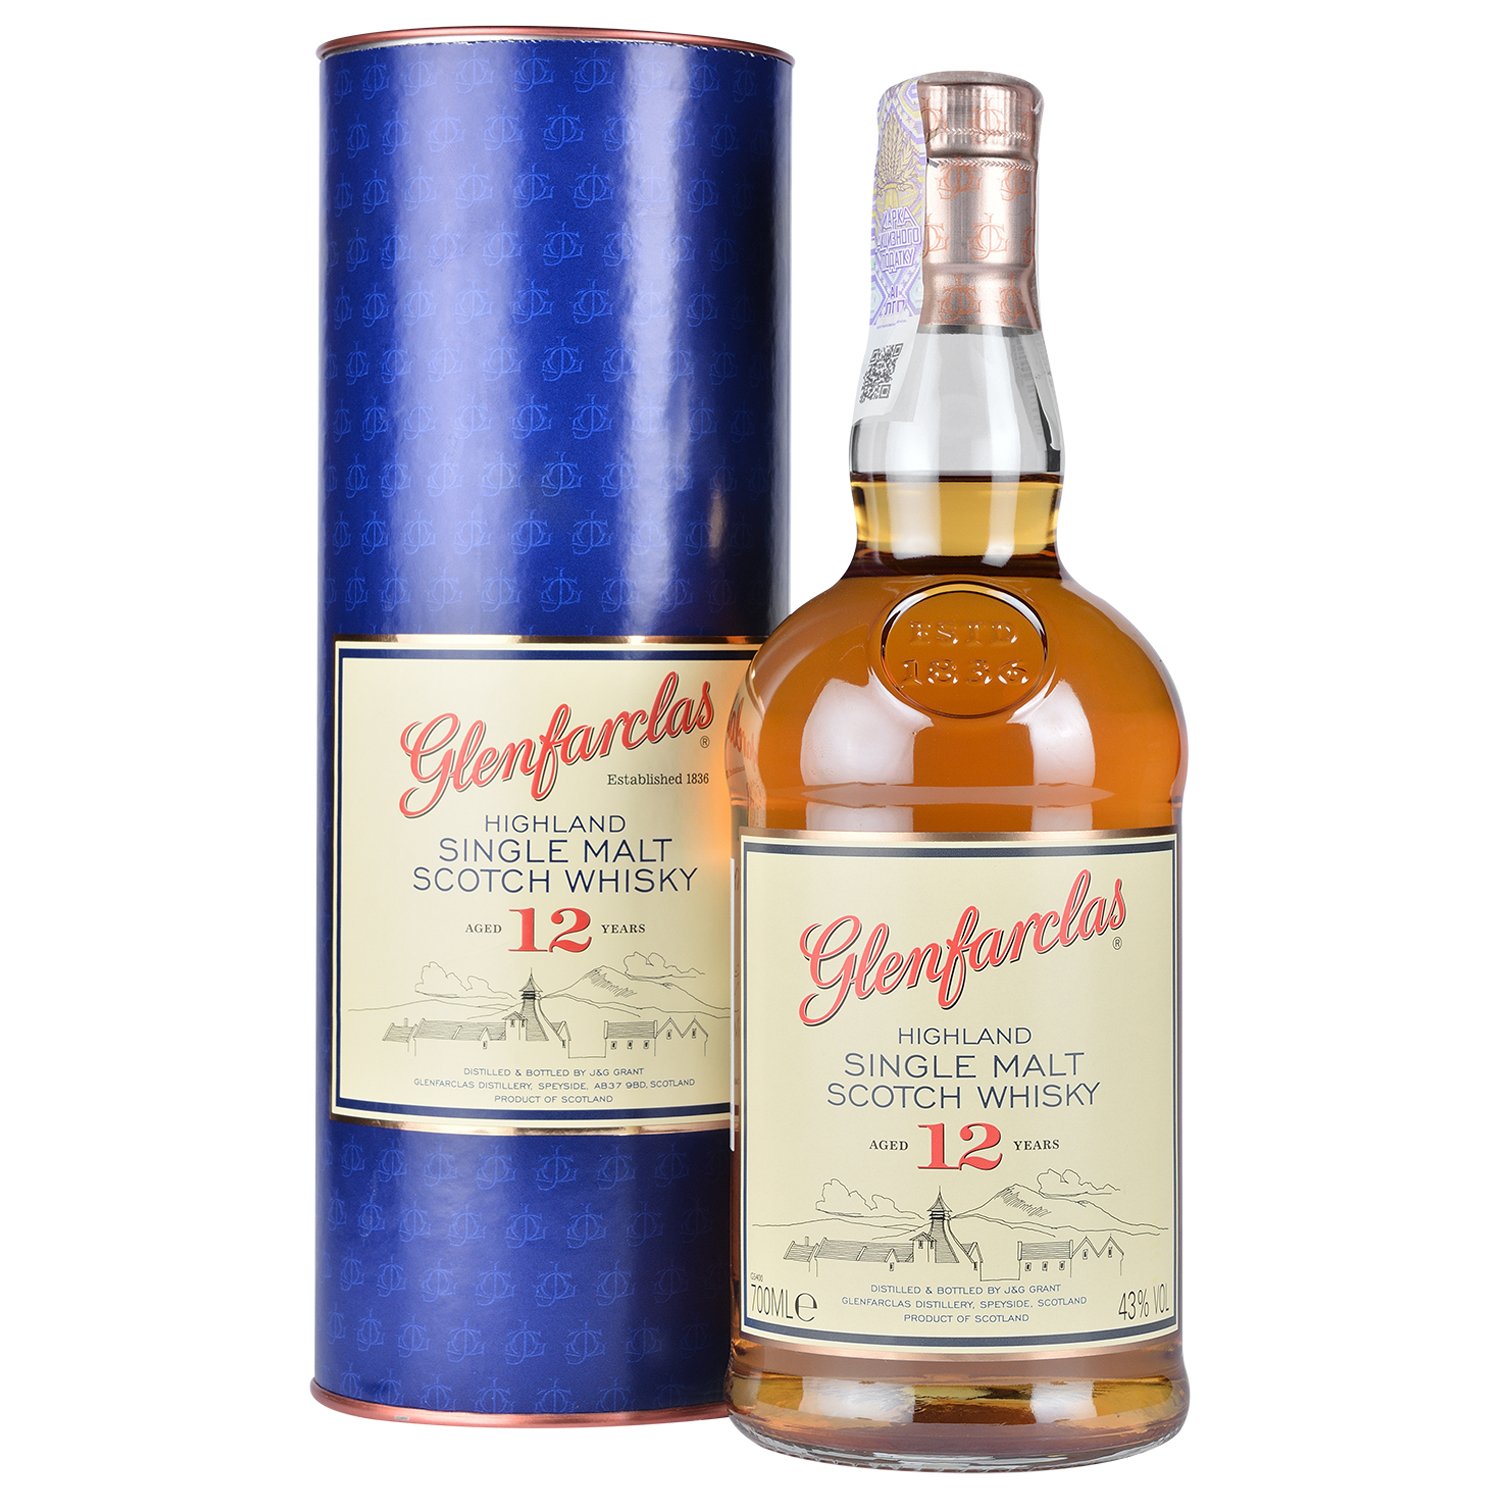 Віскі Glenfarclas Single Malt Scotch Whisky, в подарунковій упаковці, 43%, 0,7 л (683635) - фото 1